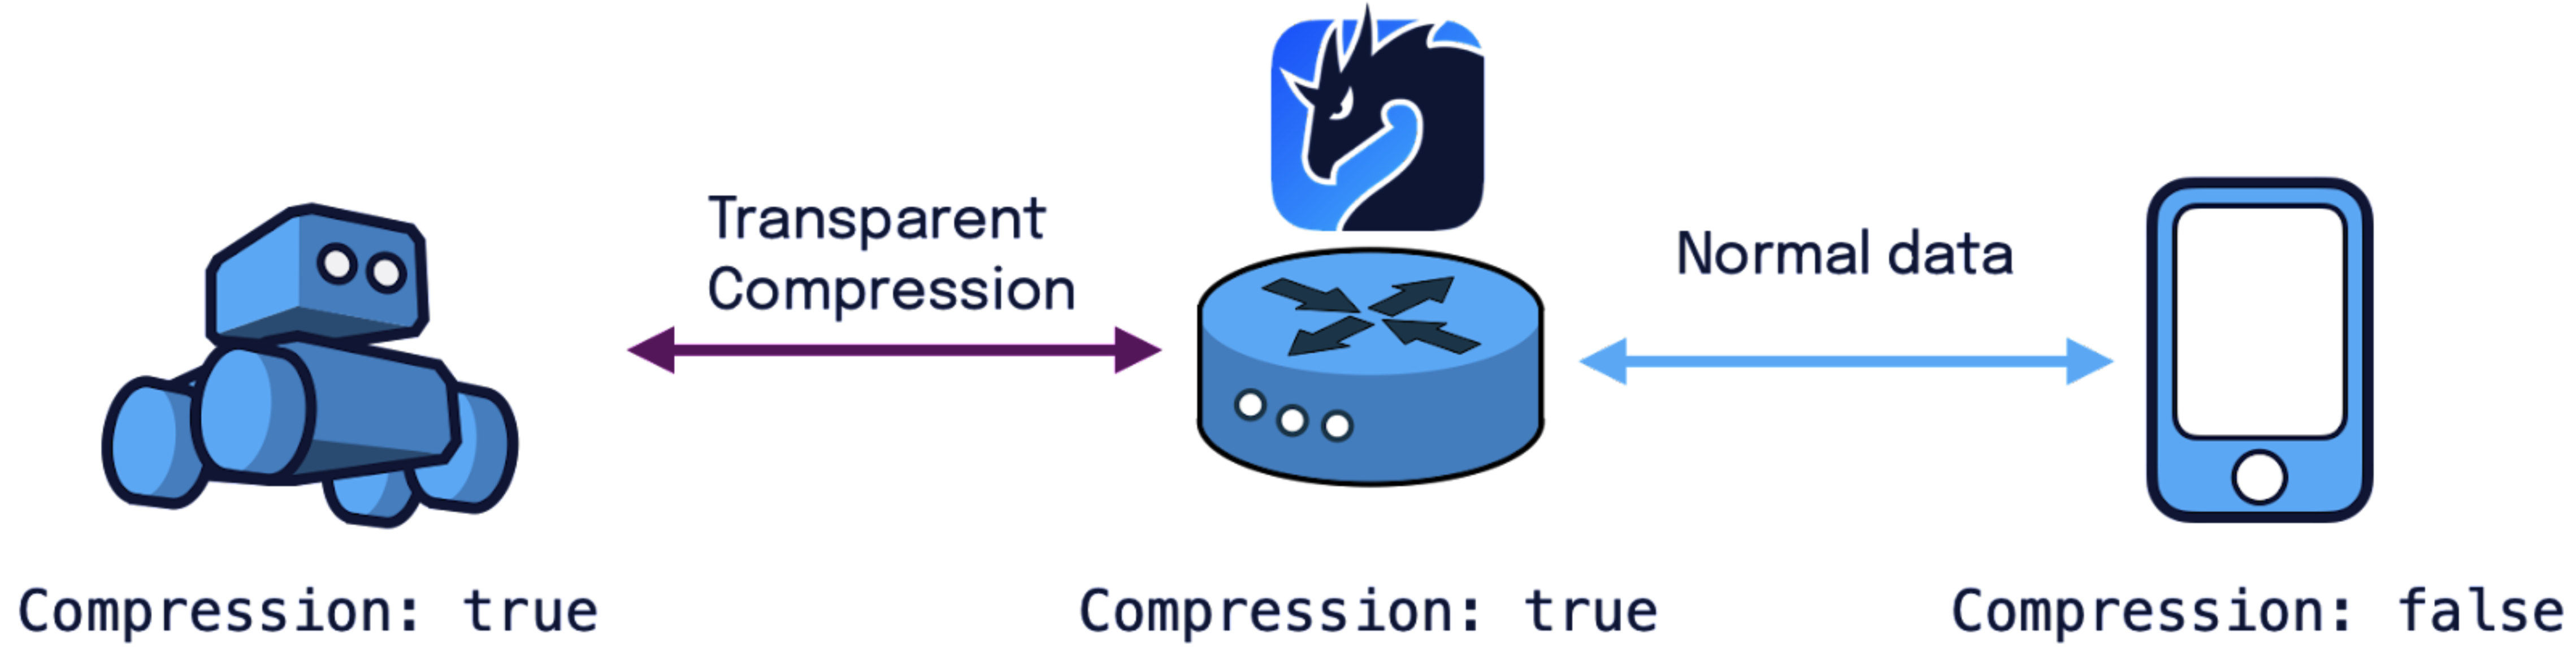 Zenoh transparent compression